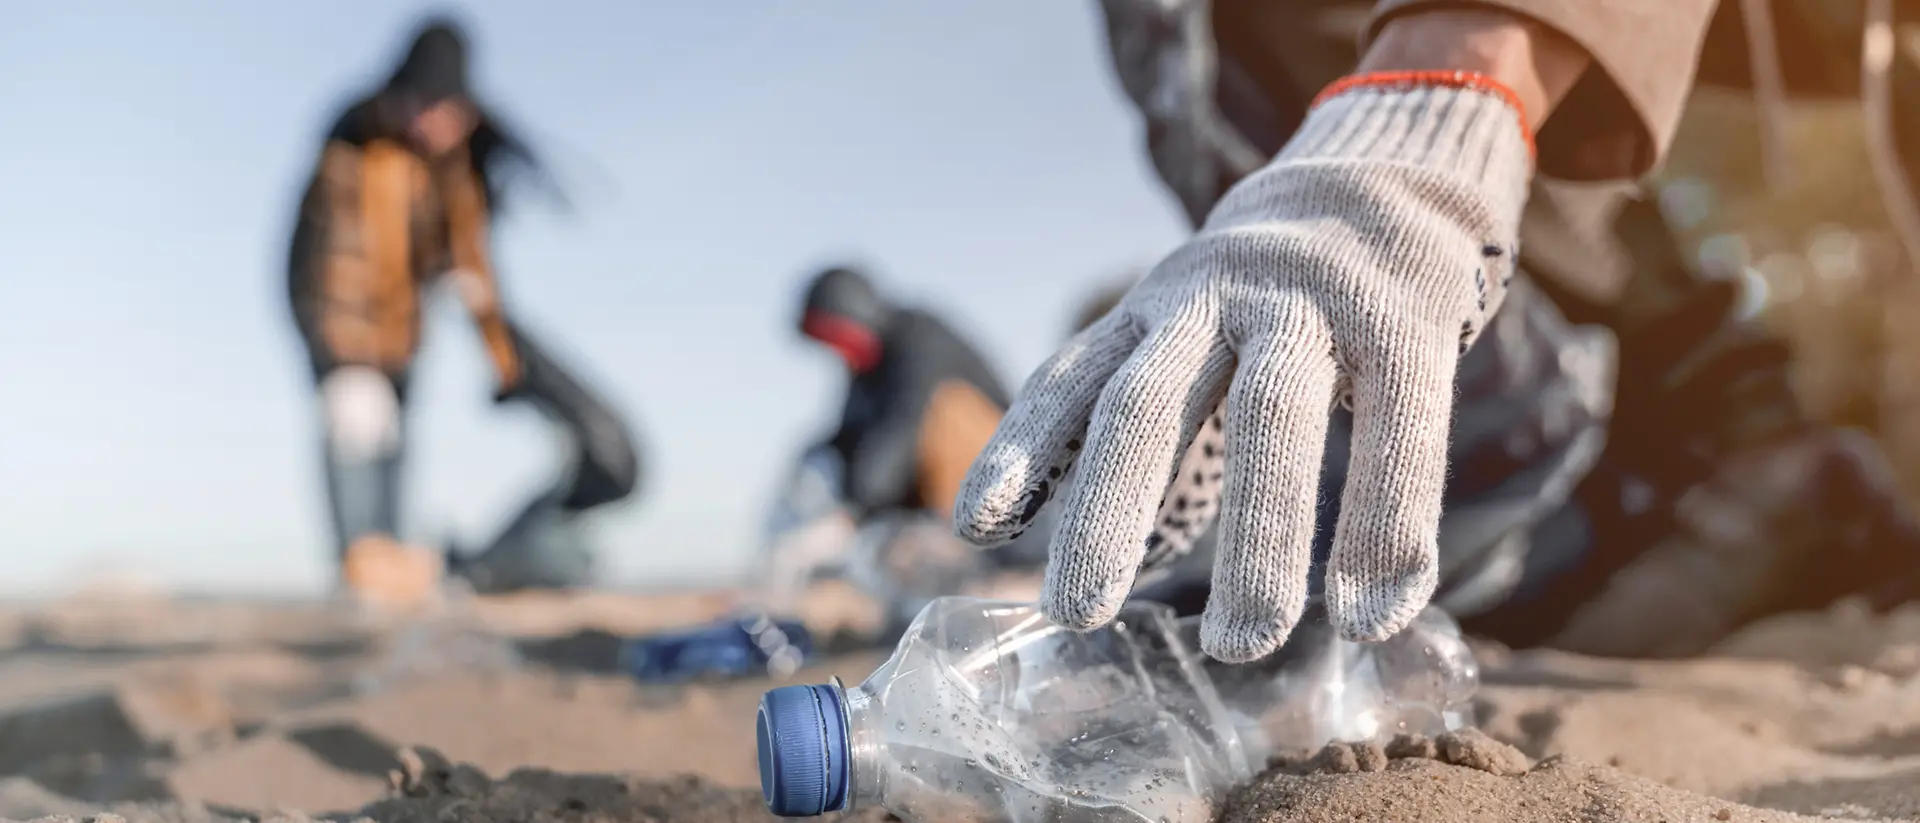 Voluntarios recogiendo basura en una playa.